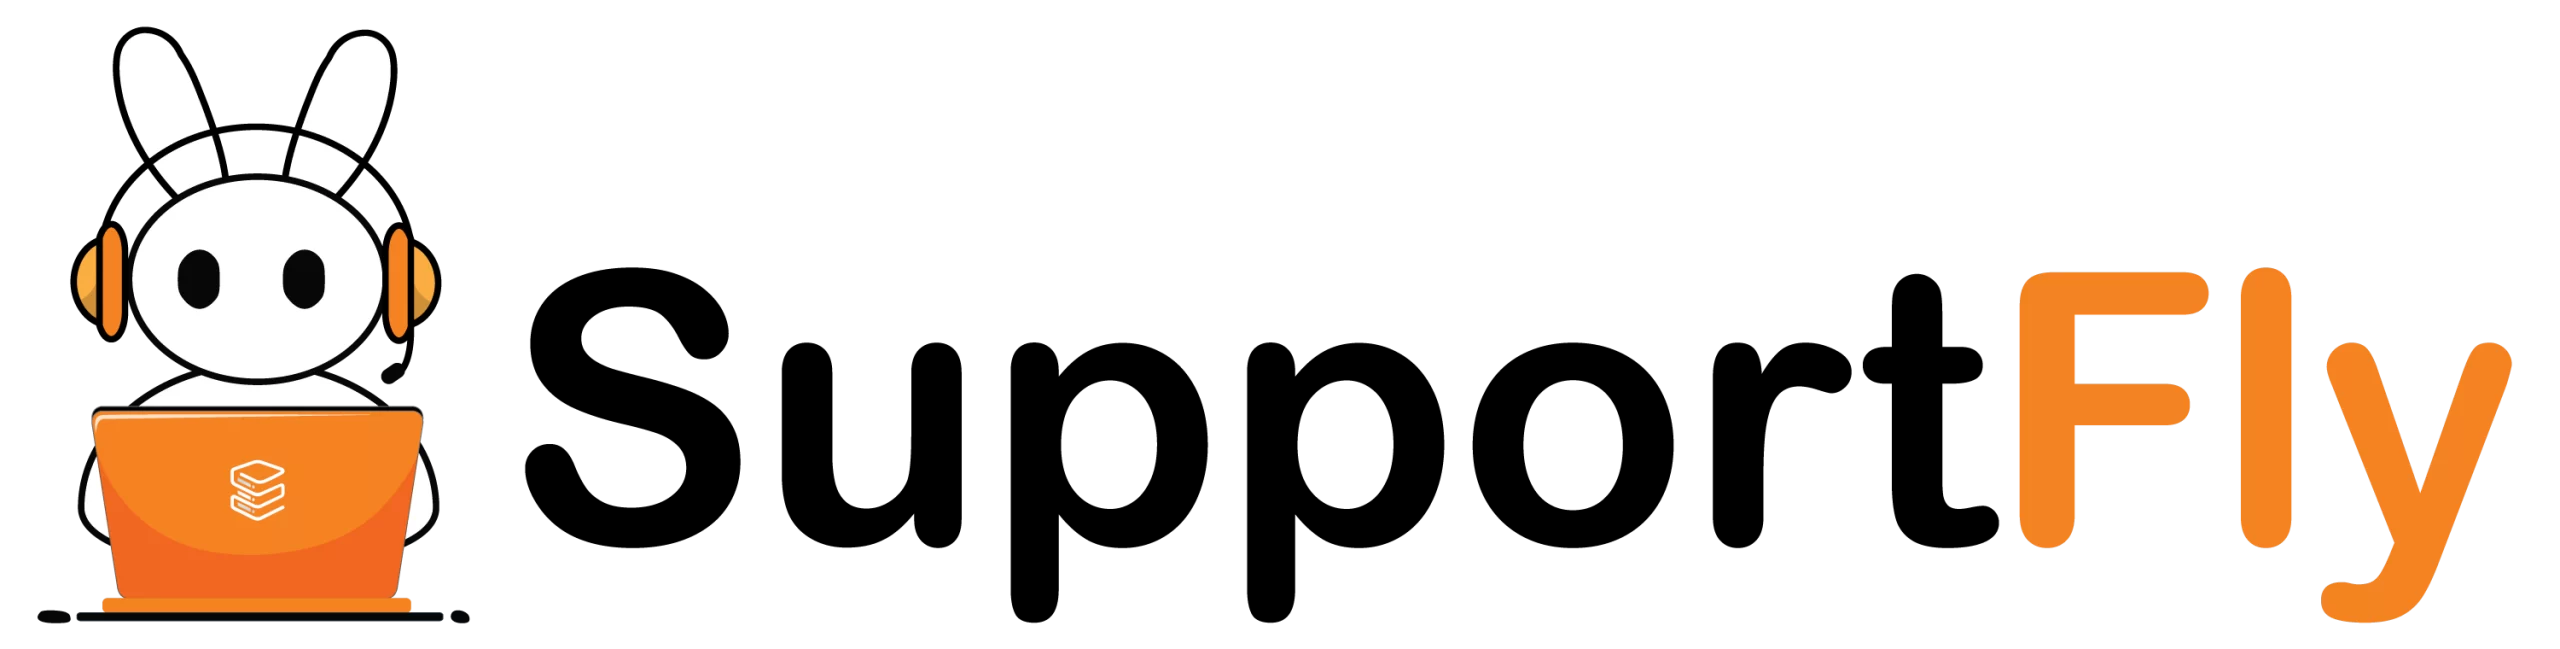 Supportfly Logo